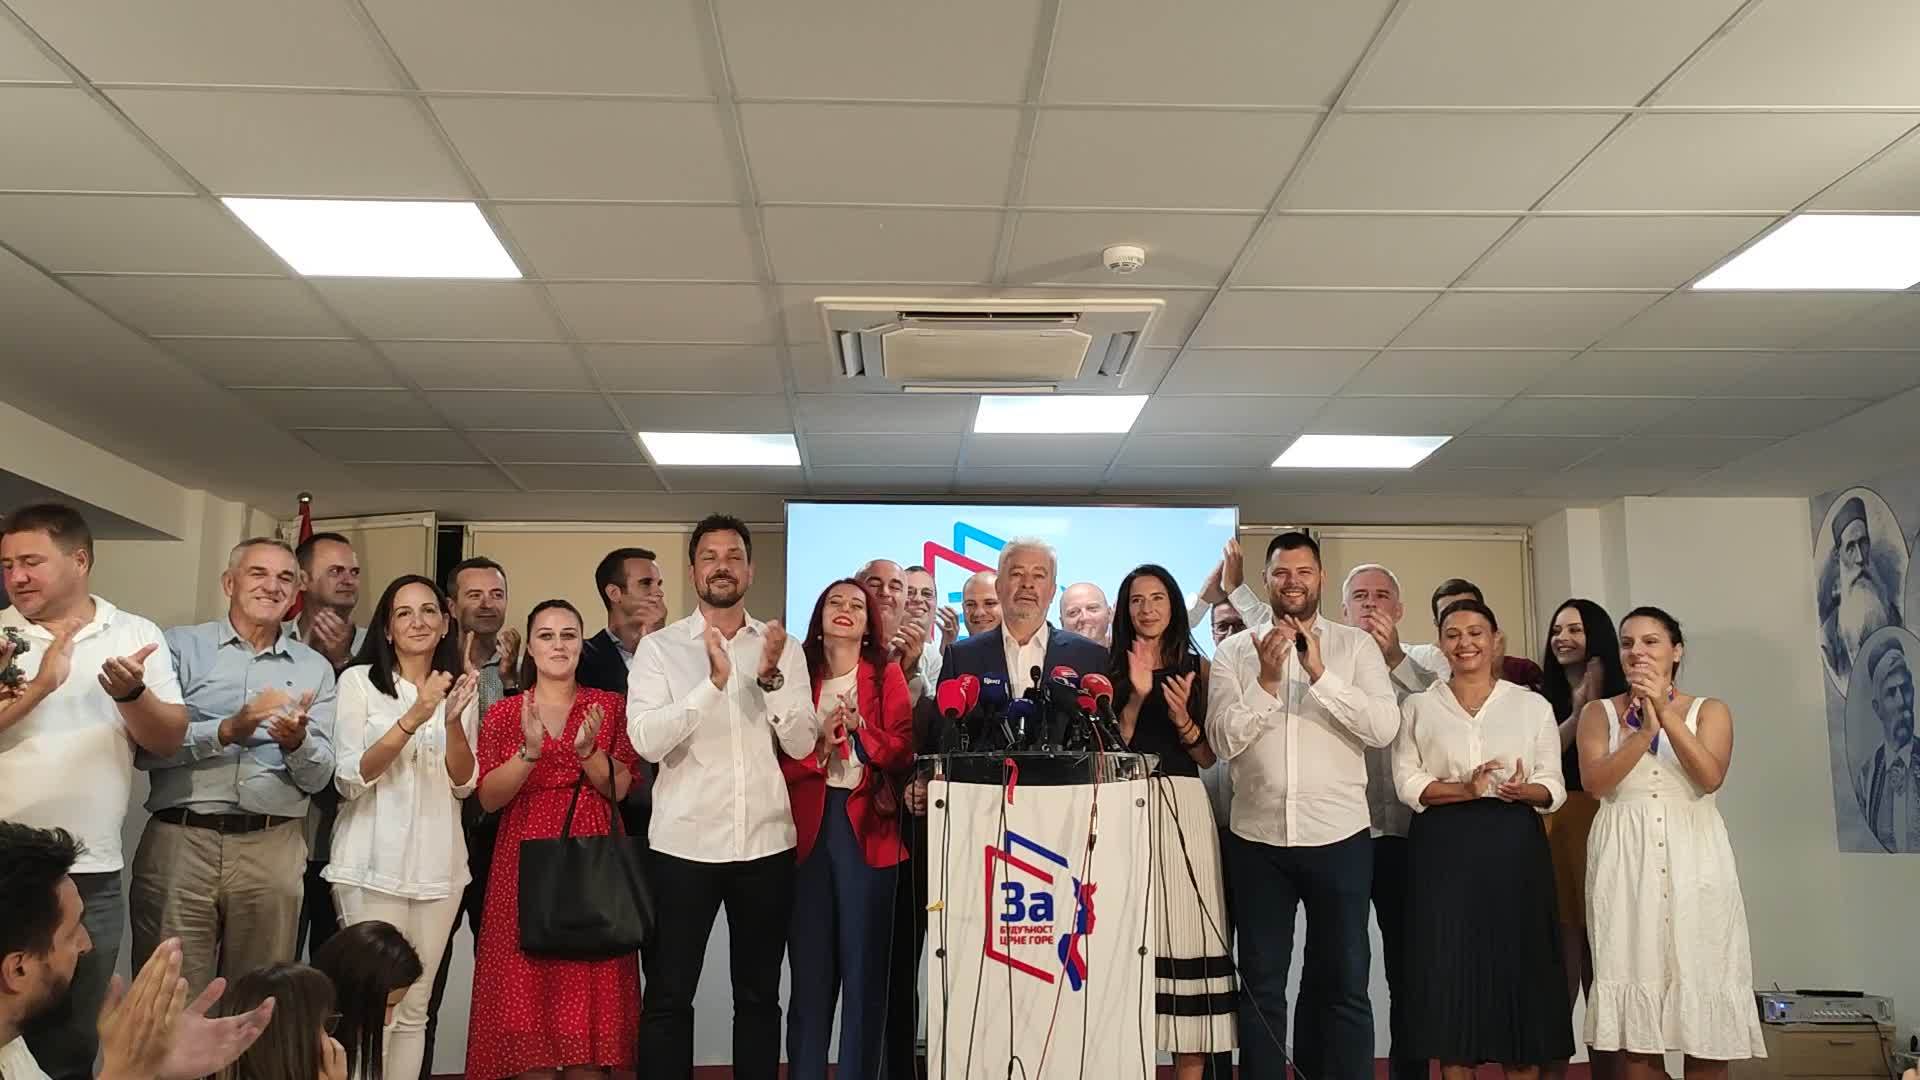  Crna Gora - Izbori 2020 - Lokal - Poraz DPS-a u Budvi, Tivtu - Novo 